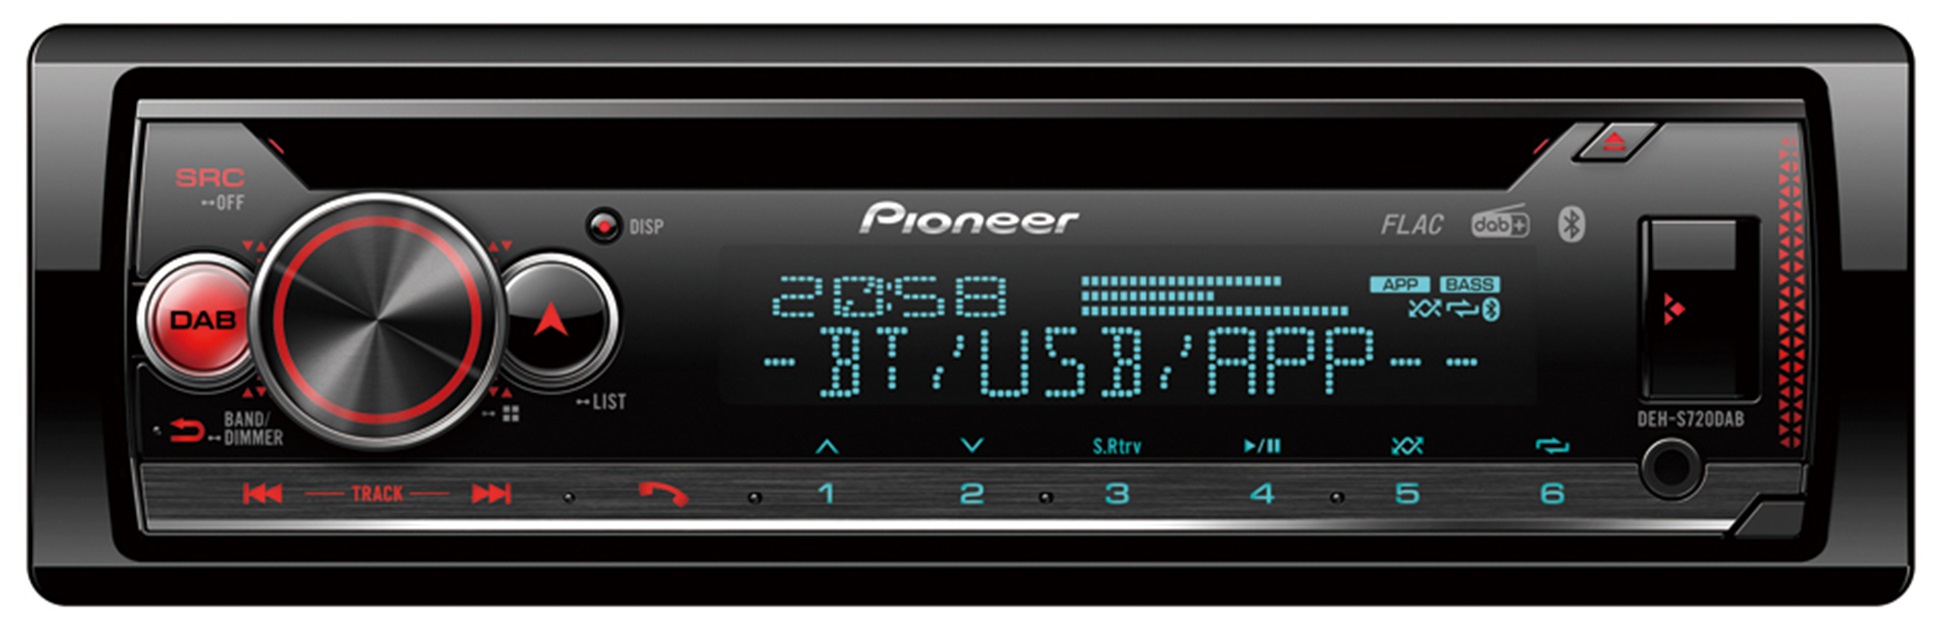 Billede af Pioneer DEH-S720DAB Bilradio m. Bluetooth, DAB+ Radio